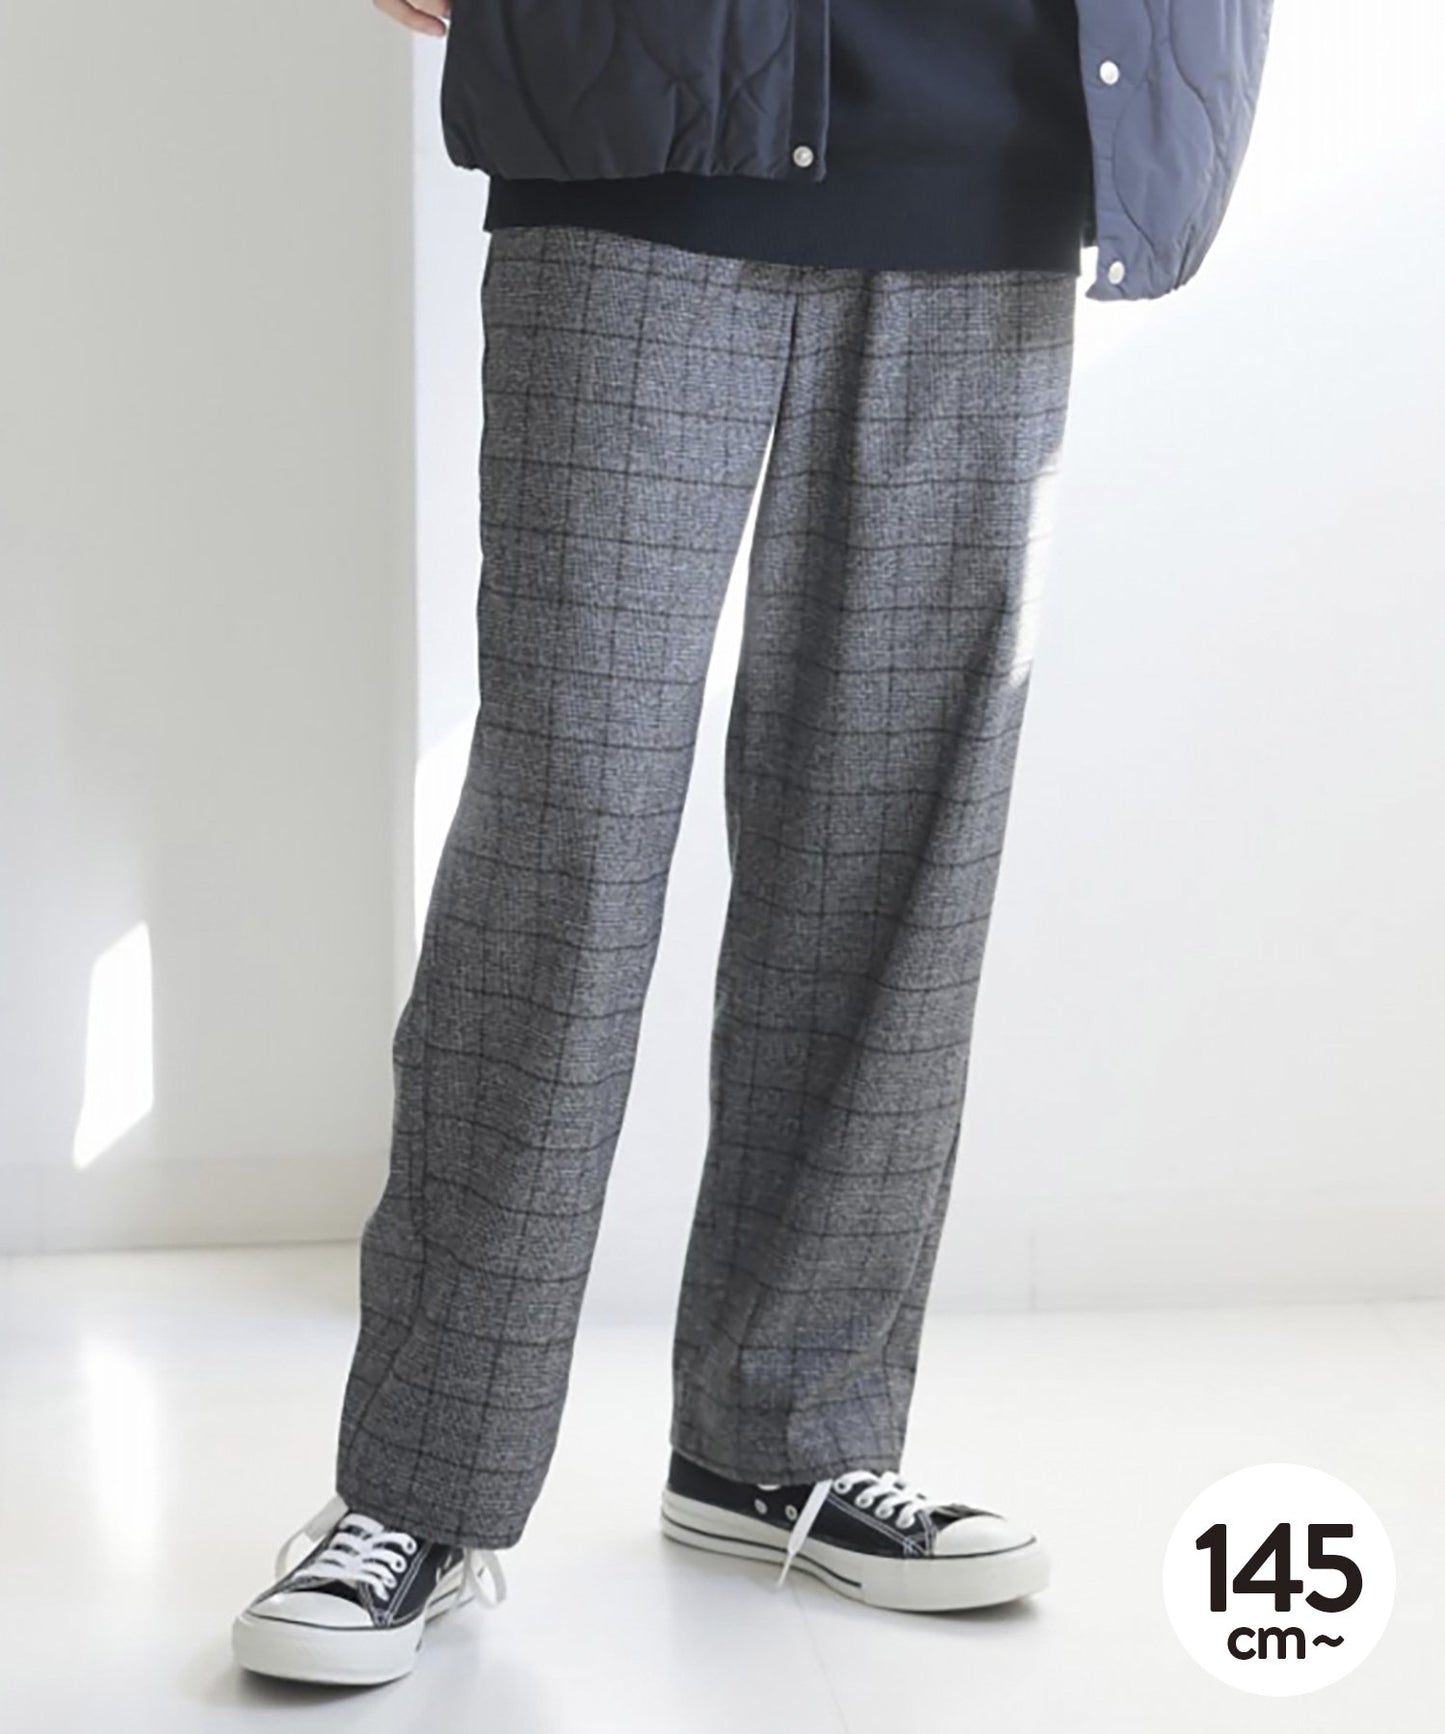 [環保材質] 法蘭絨休閒褲 穿脫皆可 套裝適用 [145-175cm]